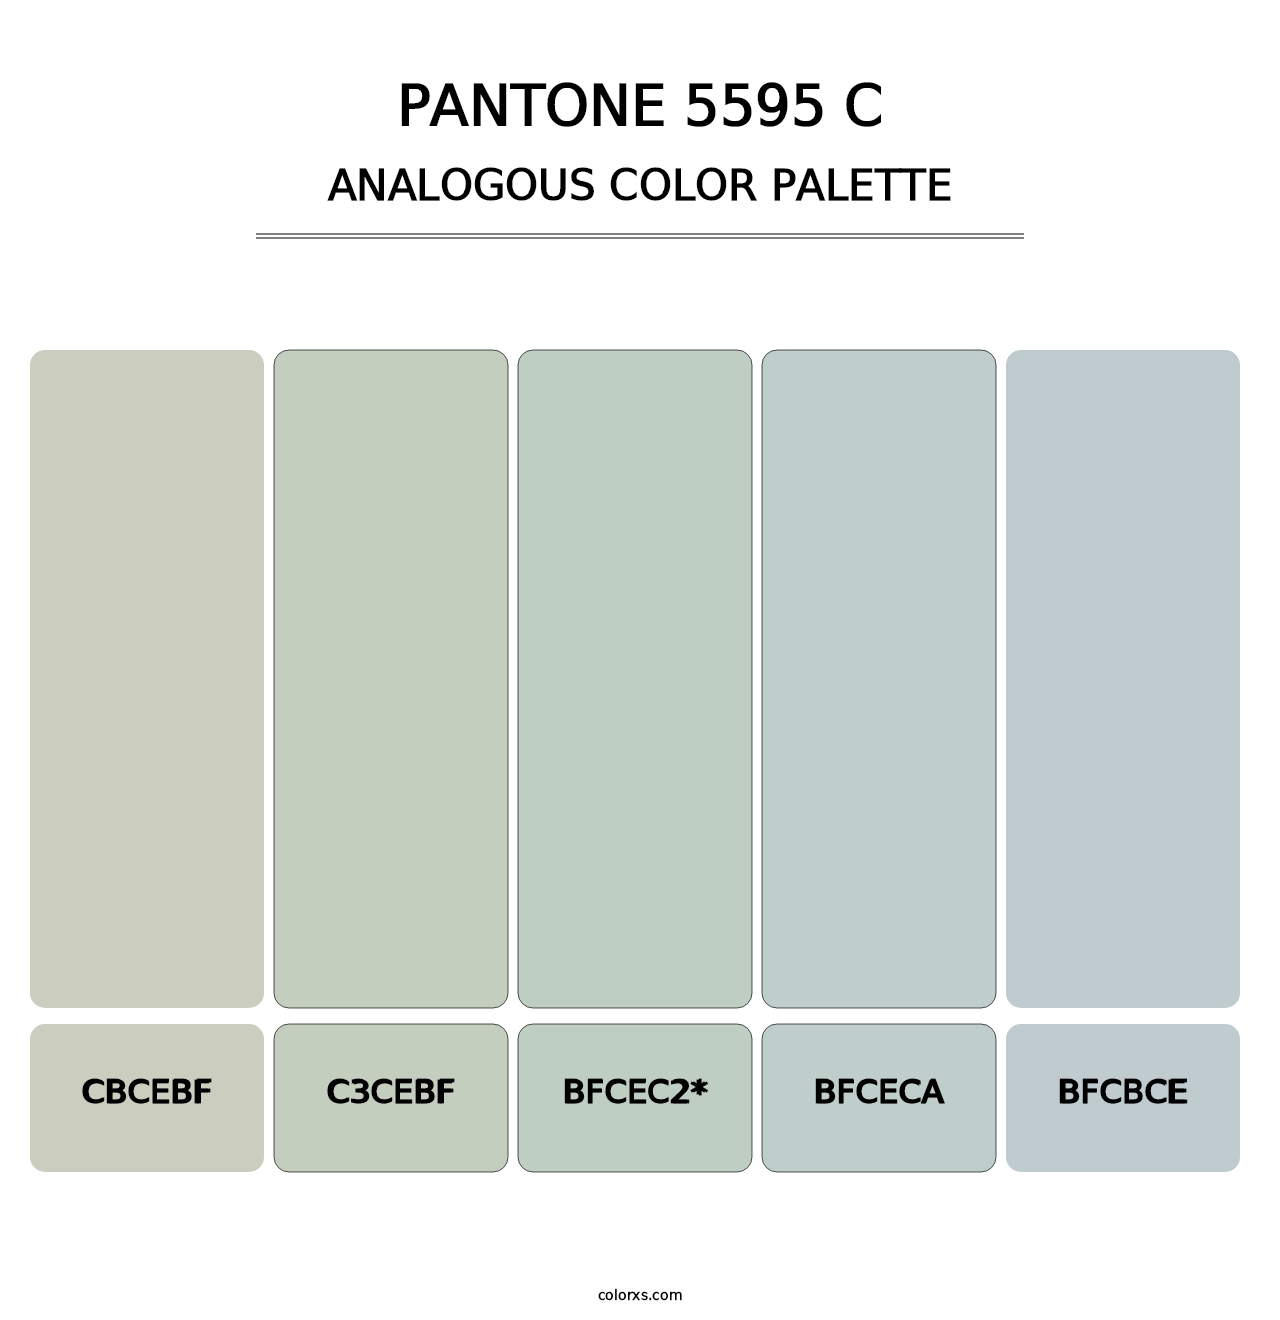 PANTONE 5595 C - Analogous Color Palette